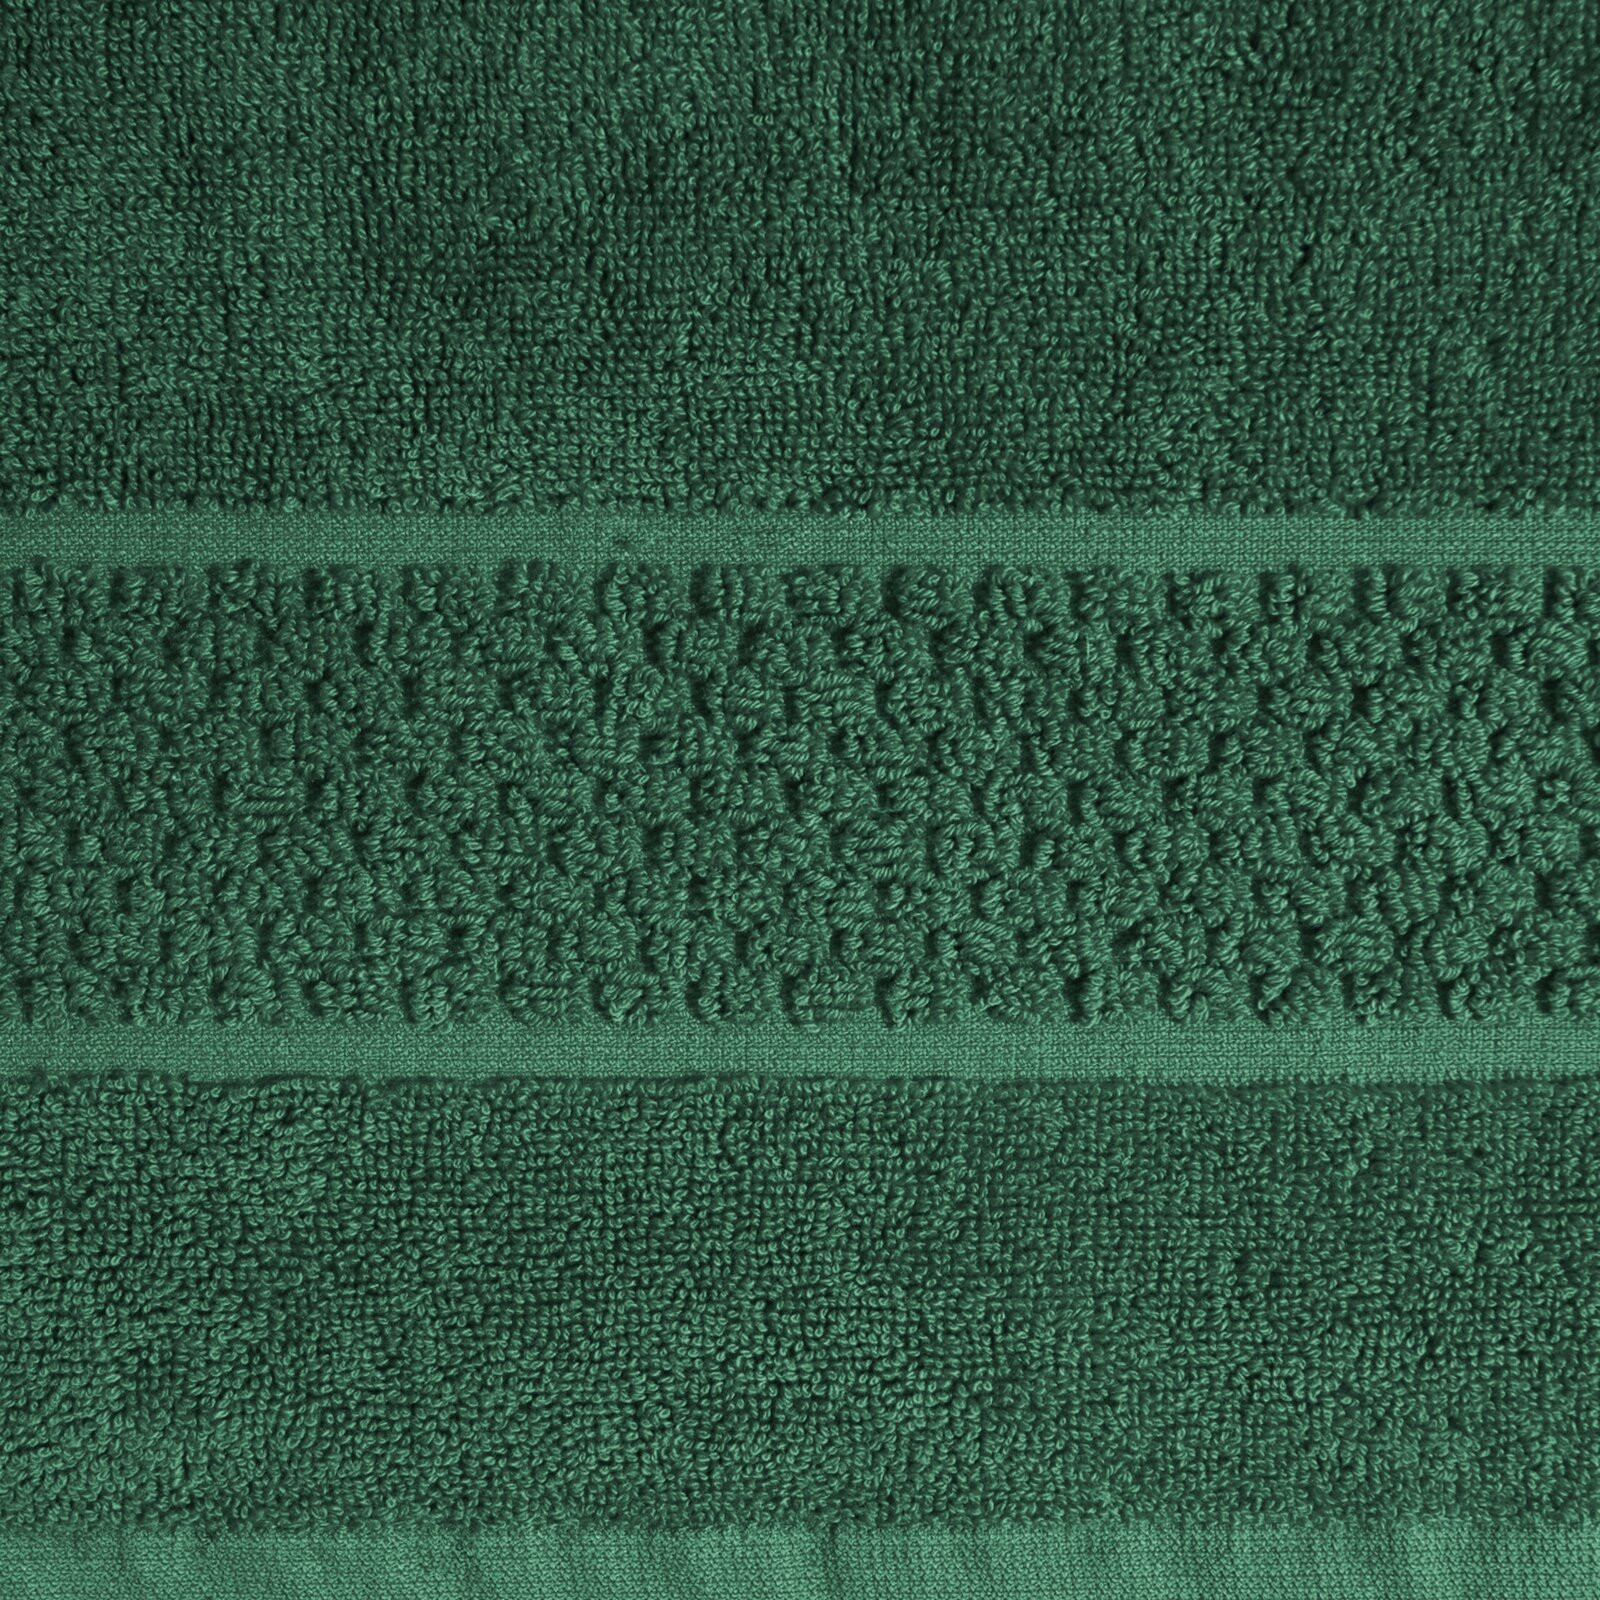 Koupelnový kobereček CALEB 11 tmavě zelený